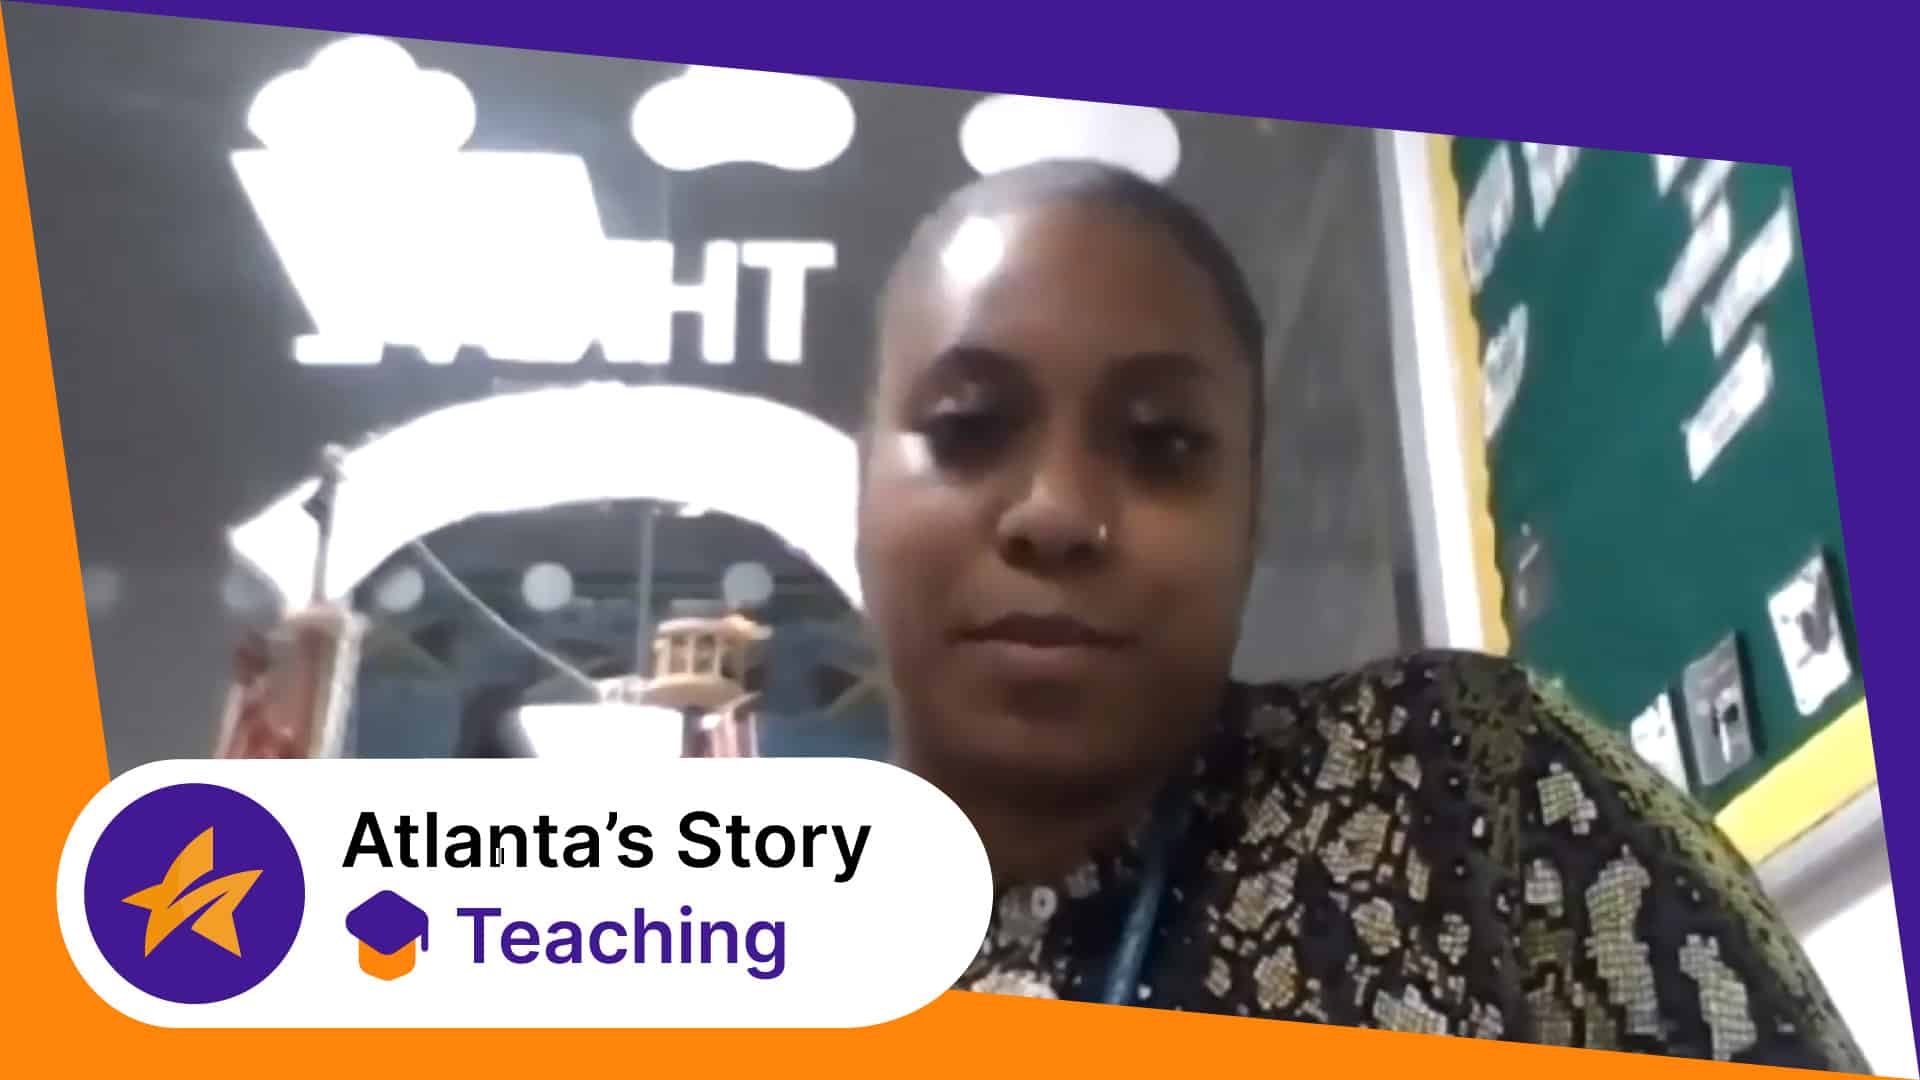 Atlanta's Story: Primary Teaching testimonial